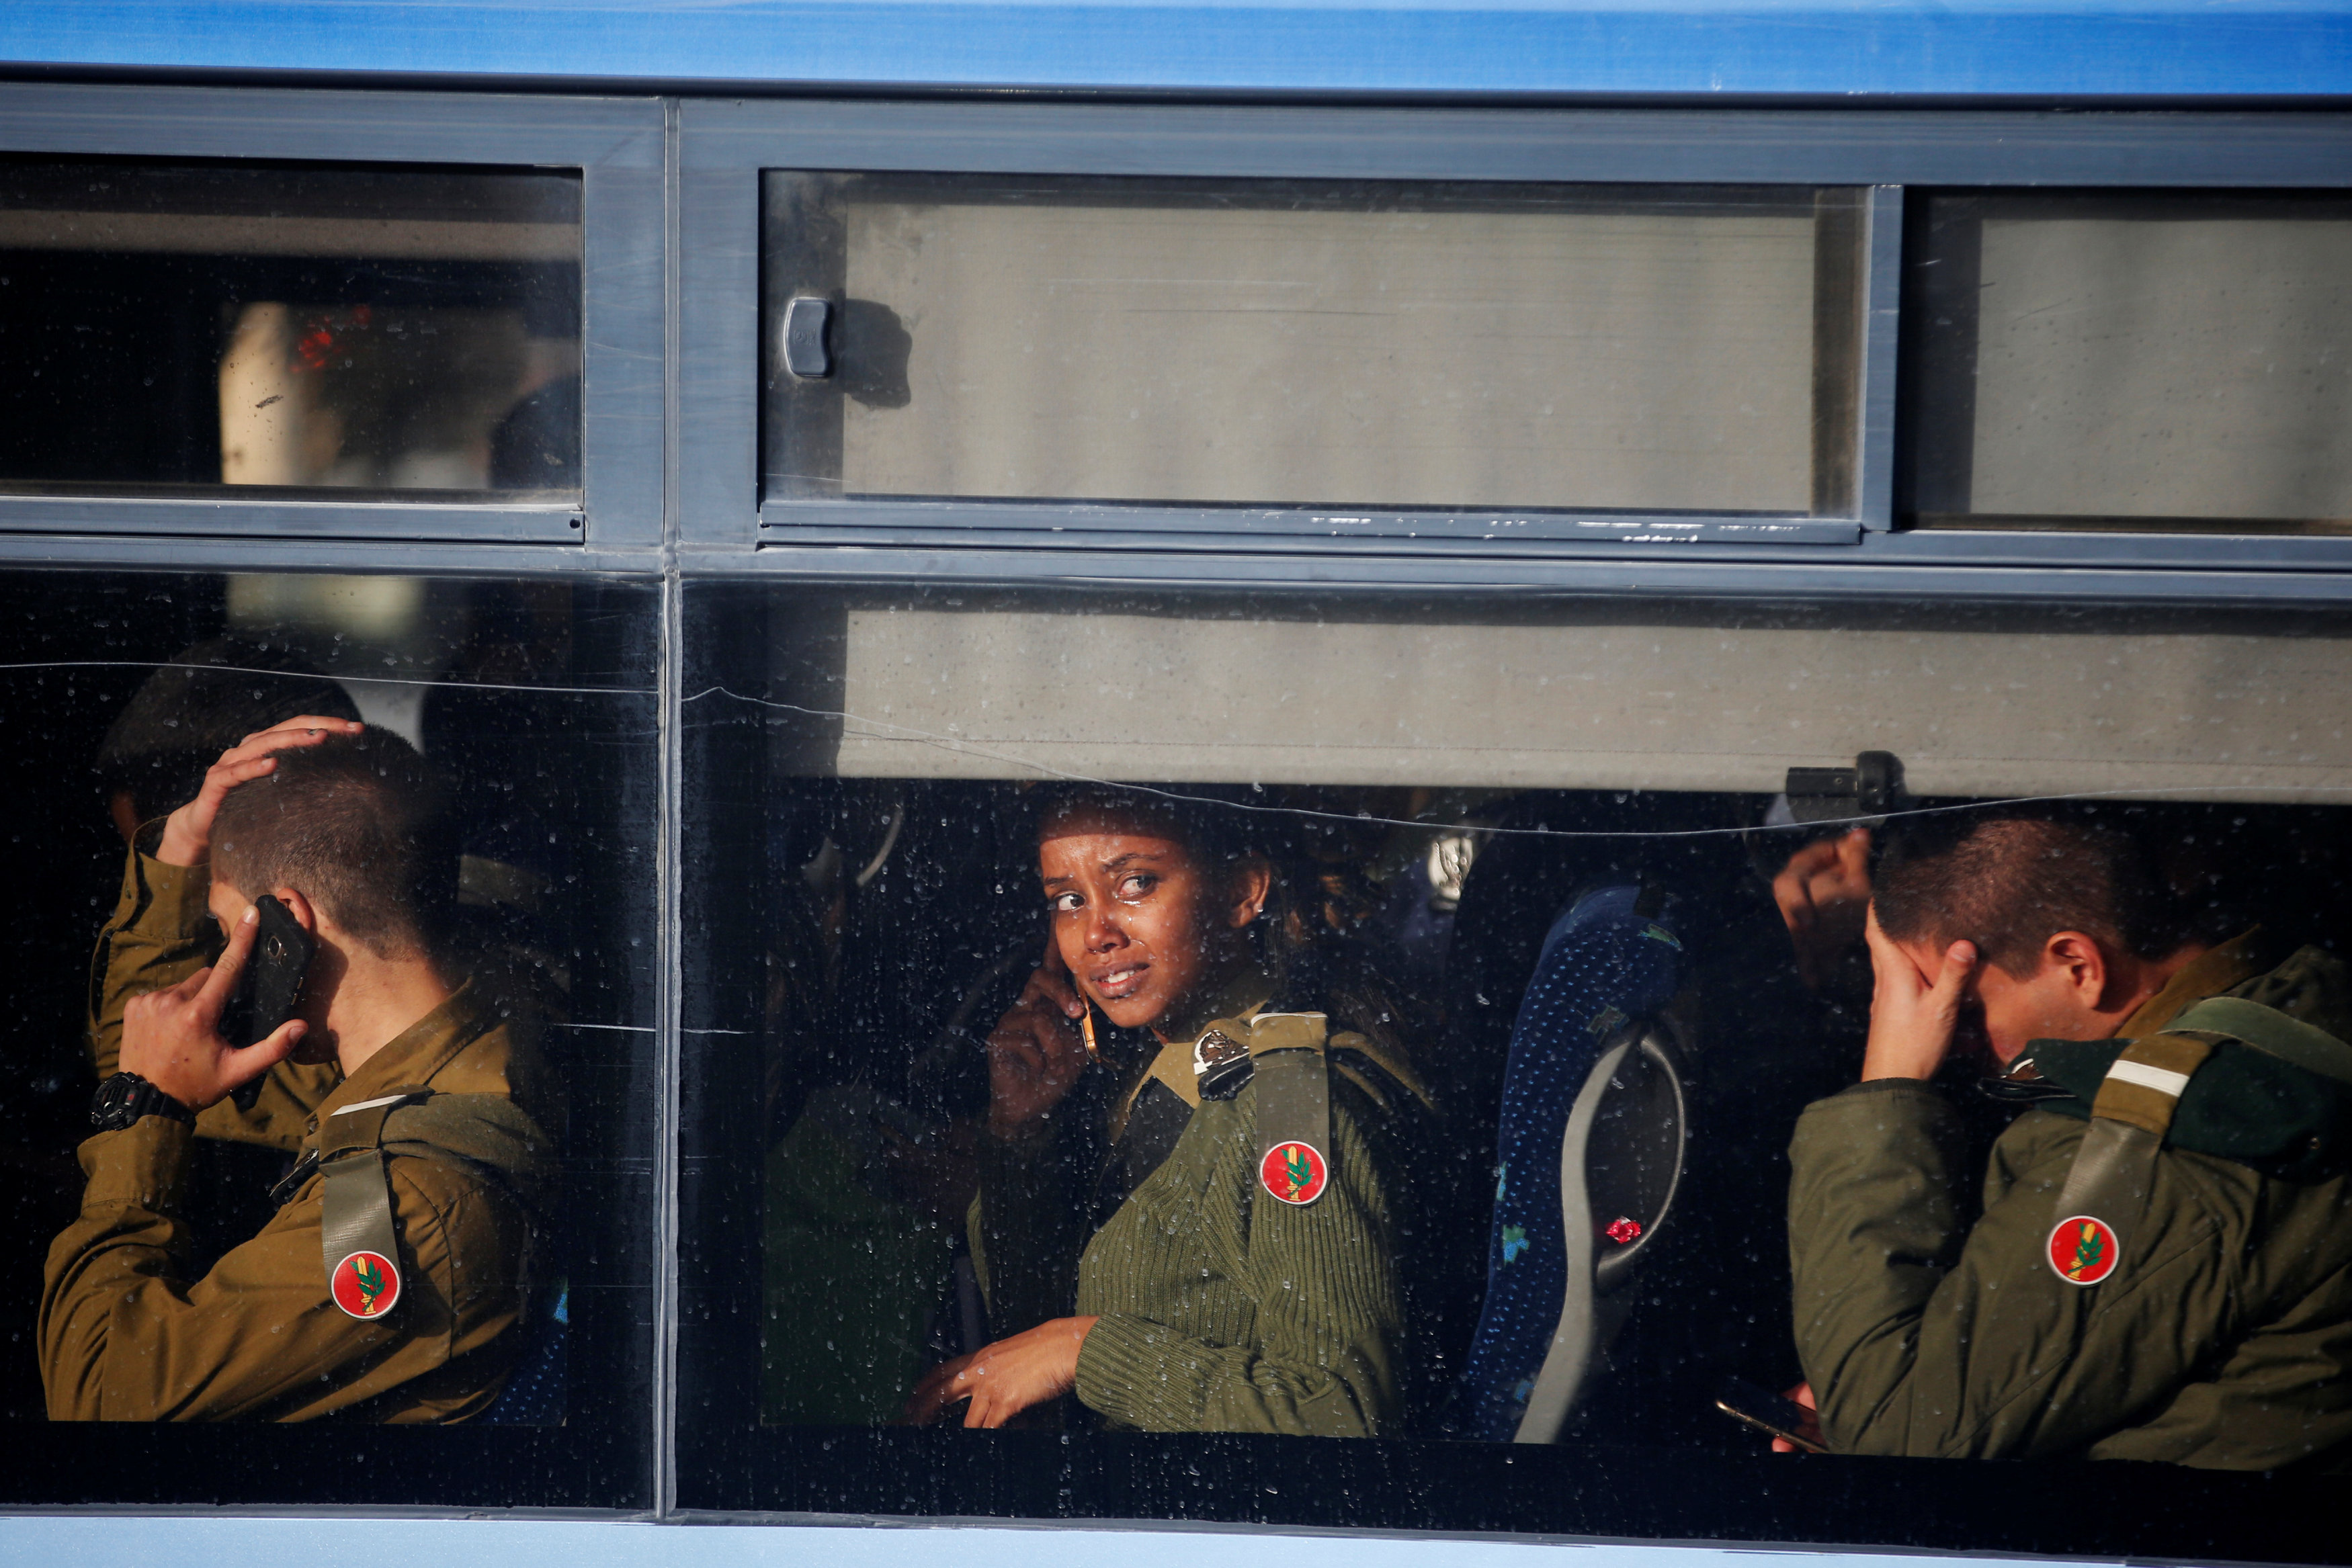 جنود اسرائيليون يستقلون حافلة بعد مغادرتهم موقع حادث الدهس فى القدس